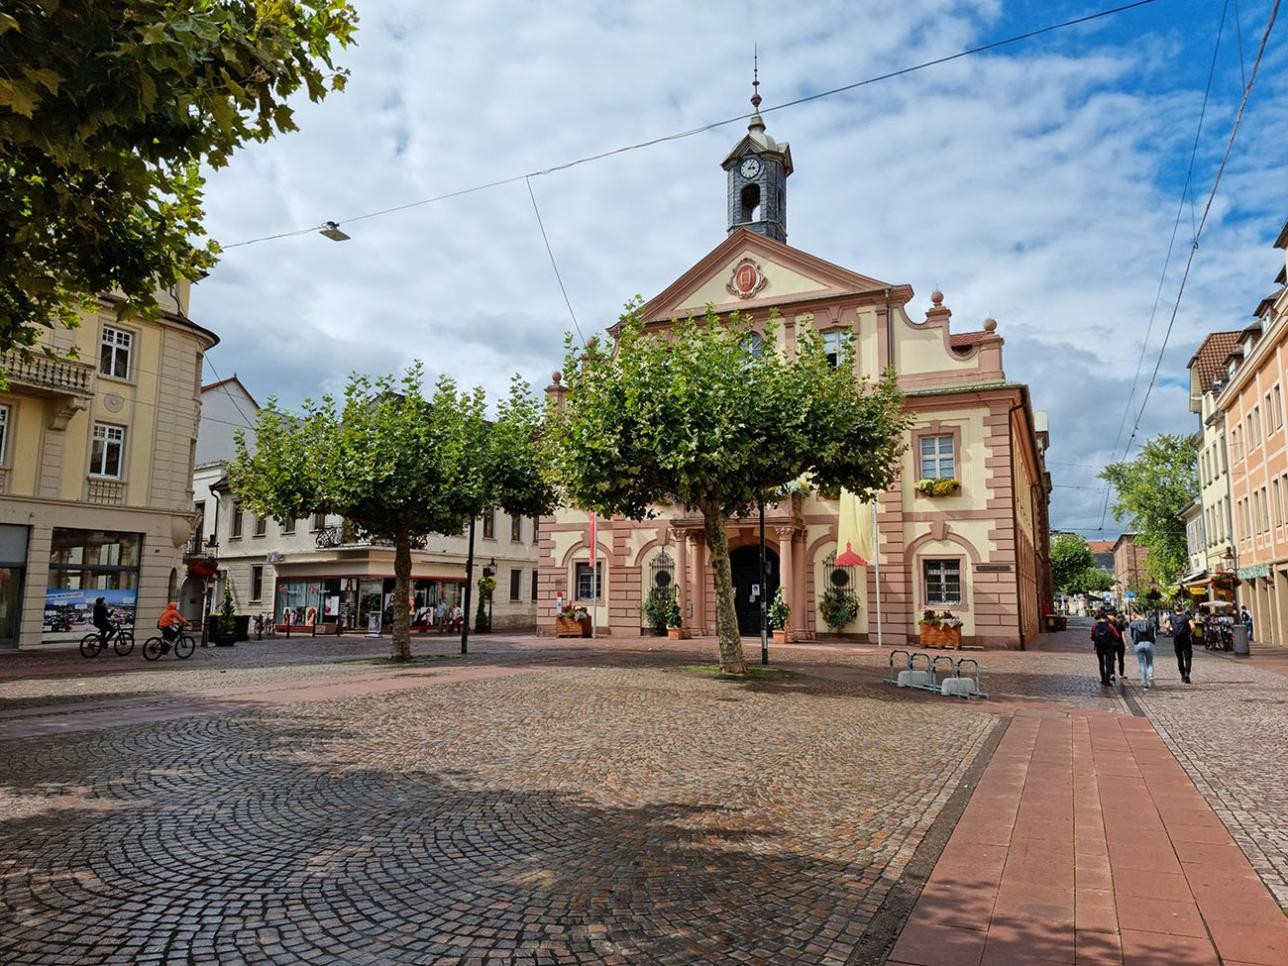 Hôtel de ville historique de la ville de Rastatt